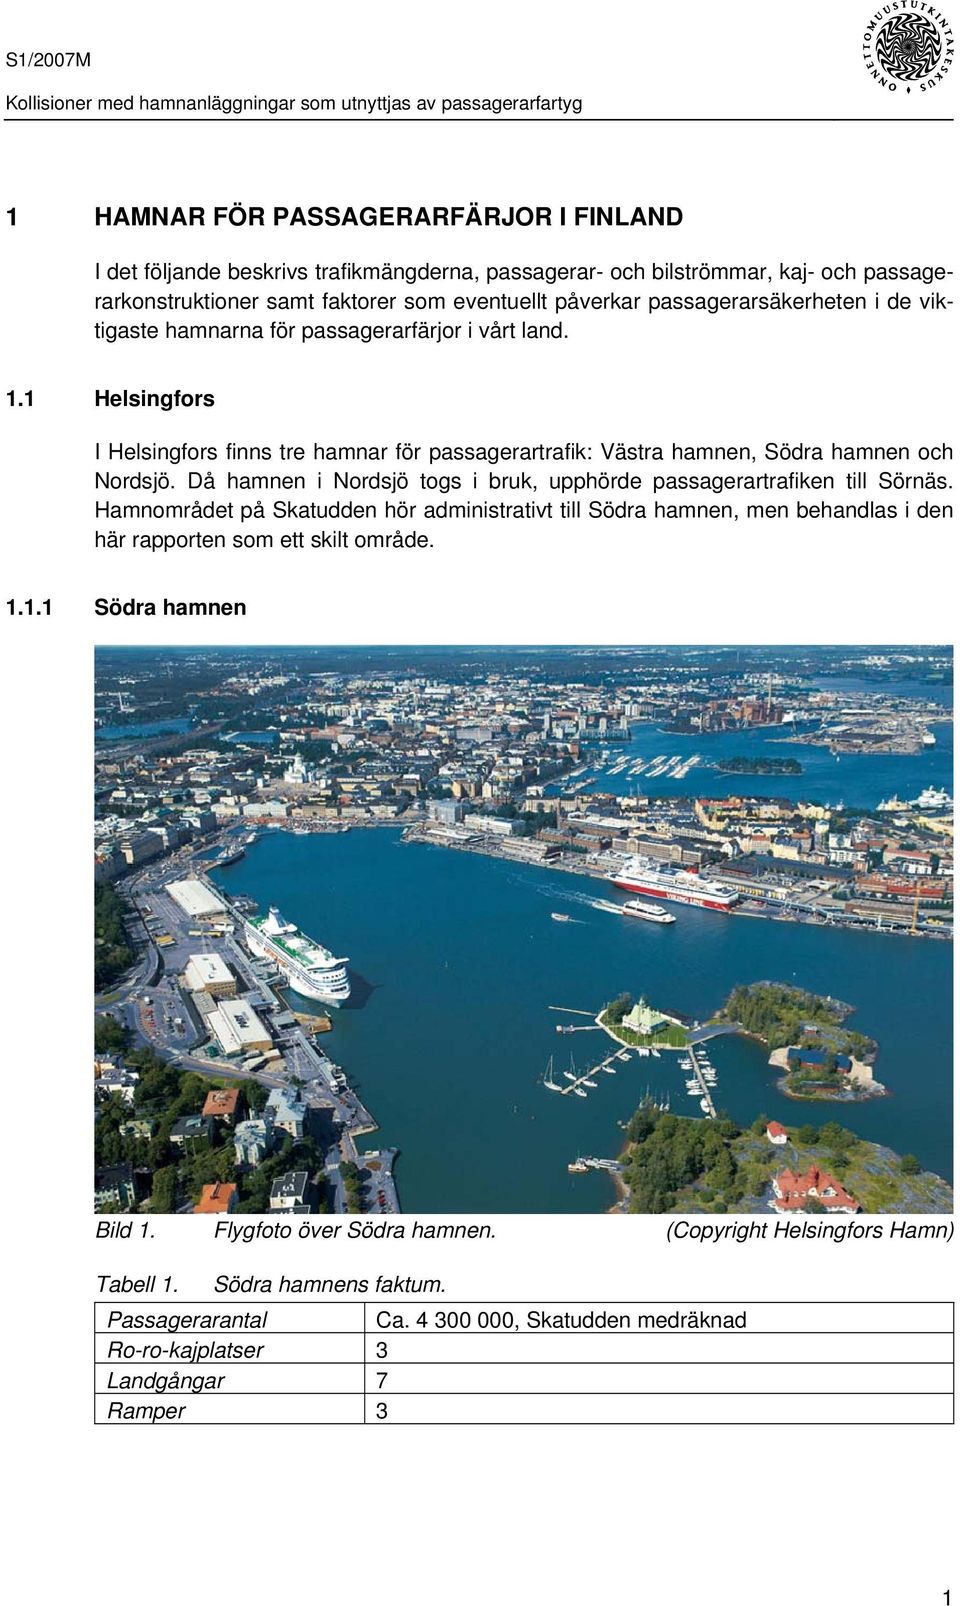 Då hamnen i Nordsjö togs i bruk, upphörde passagerartrafiken till Sörnäs. Hamnområdet på Skatudden hör administrativt till Södra hamnen, men behandlas i den här rapporten som ett skilt område.